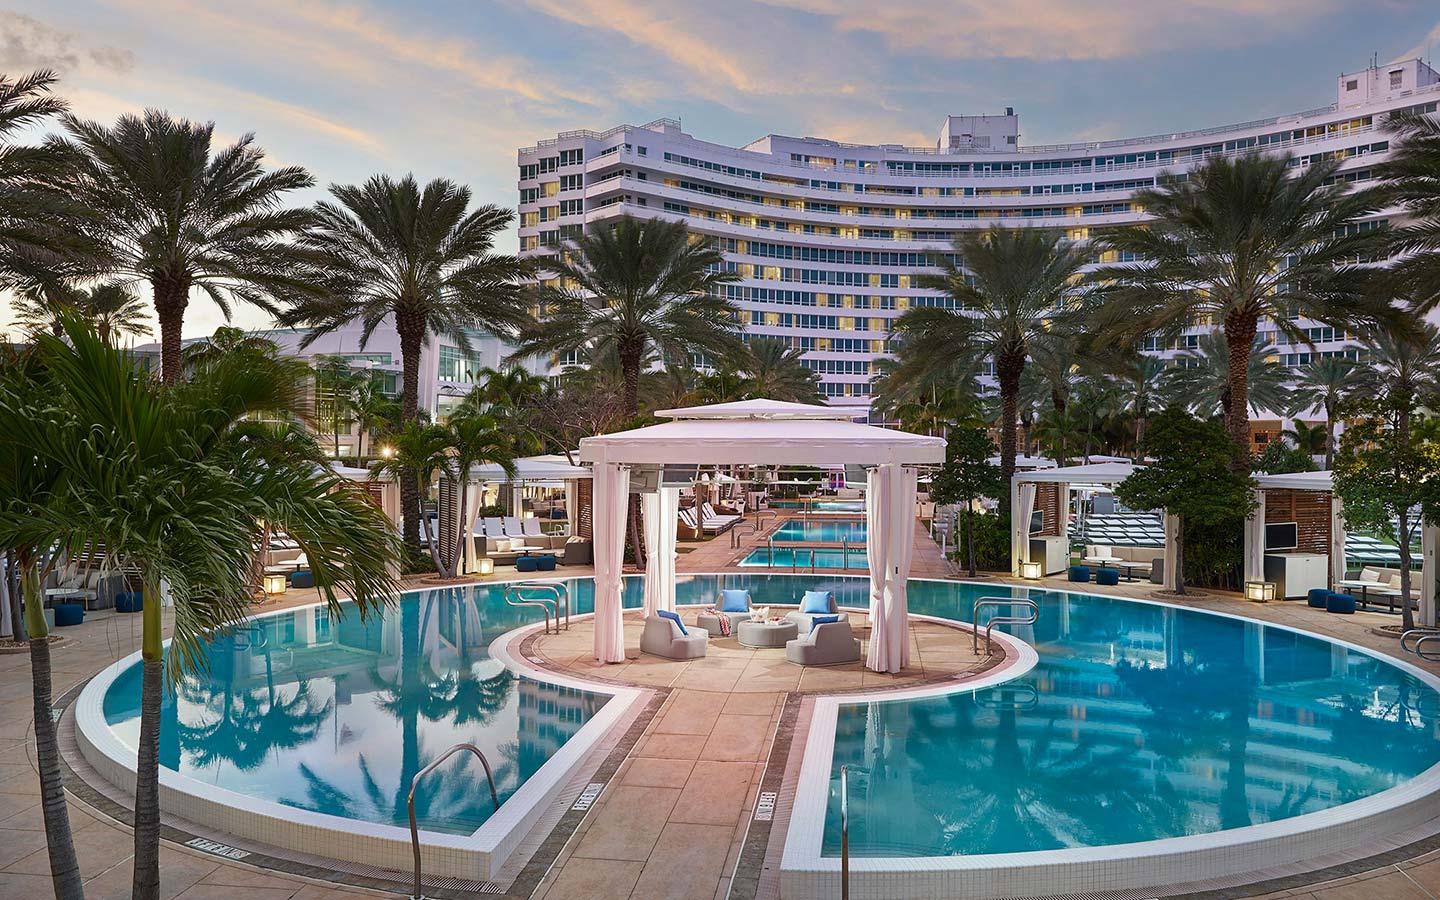 Pool Party Miami, Fontainebleau Miami Beach – Arkadia Day Club